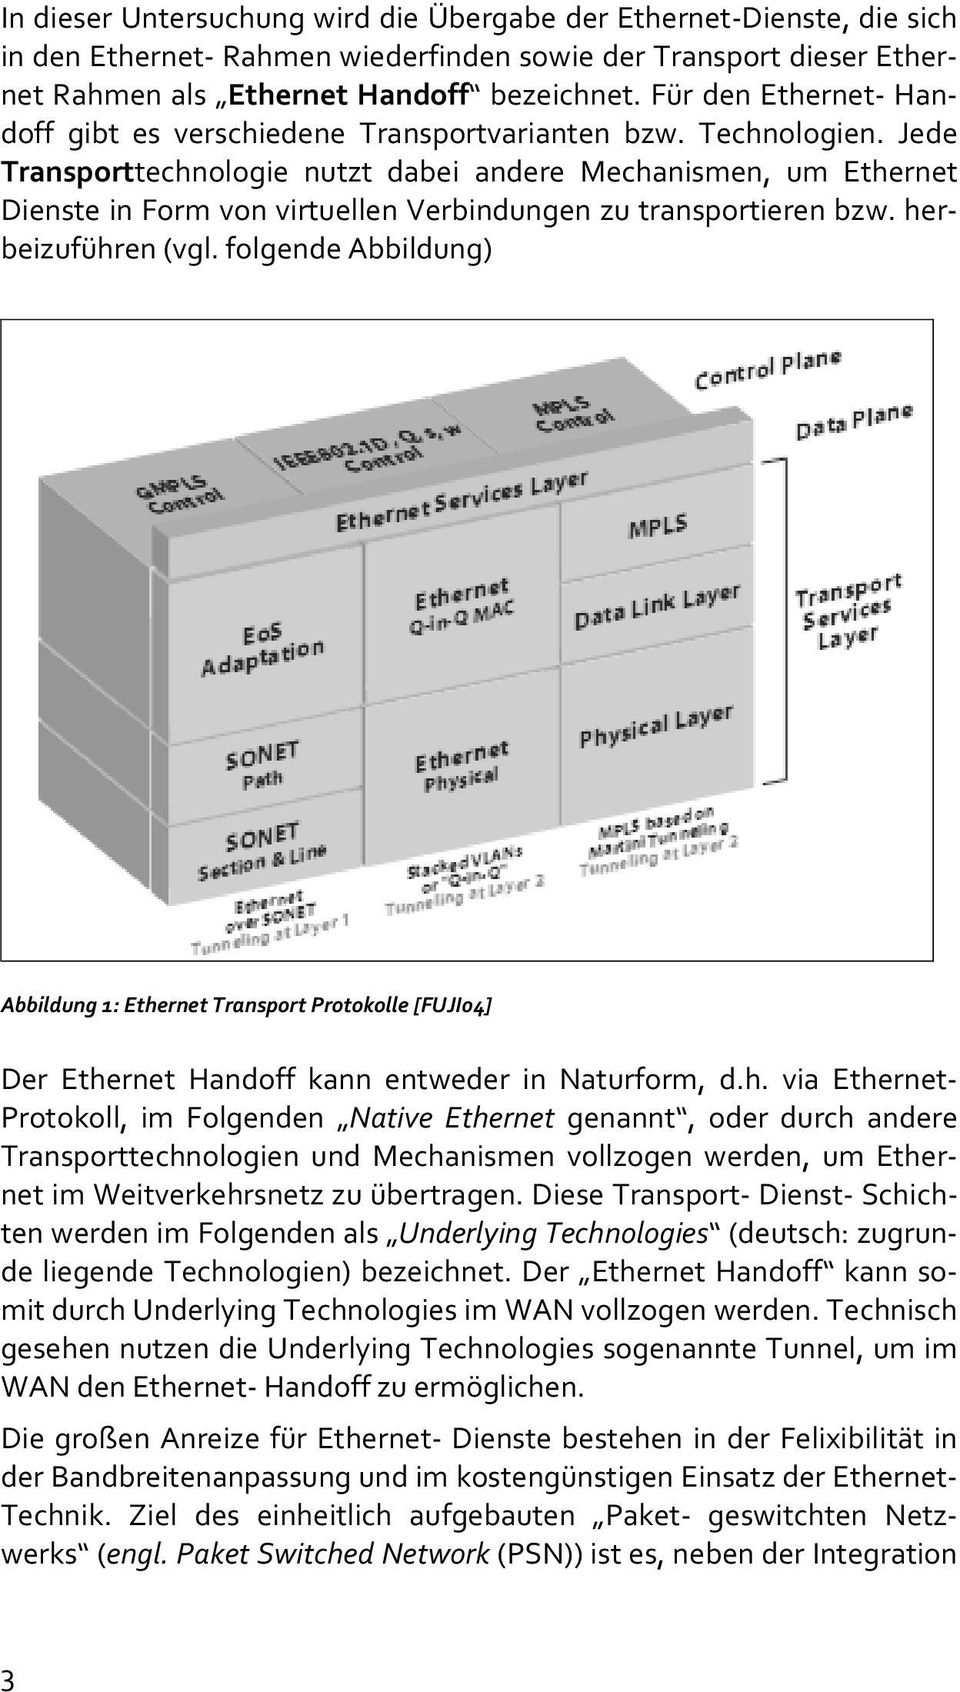 Jede Transporttechnologie nutzt dabei andere Mechanismen, um Ethernet Dienste in Form von virtuellen Verbindungen zu transportieren bzw. herbeizuführen (vgl.